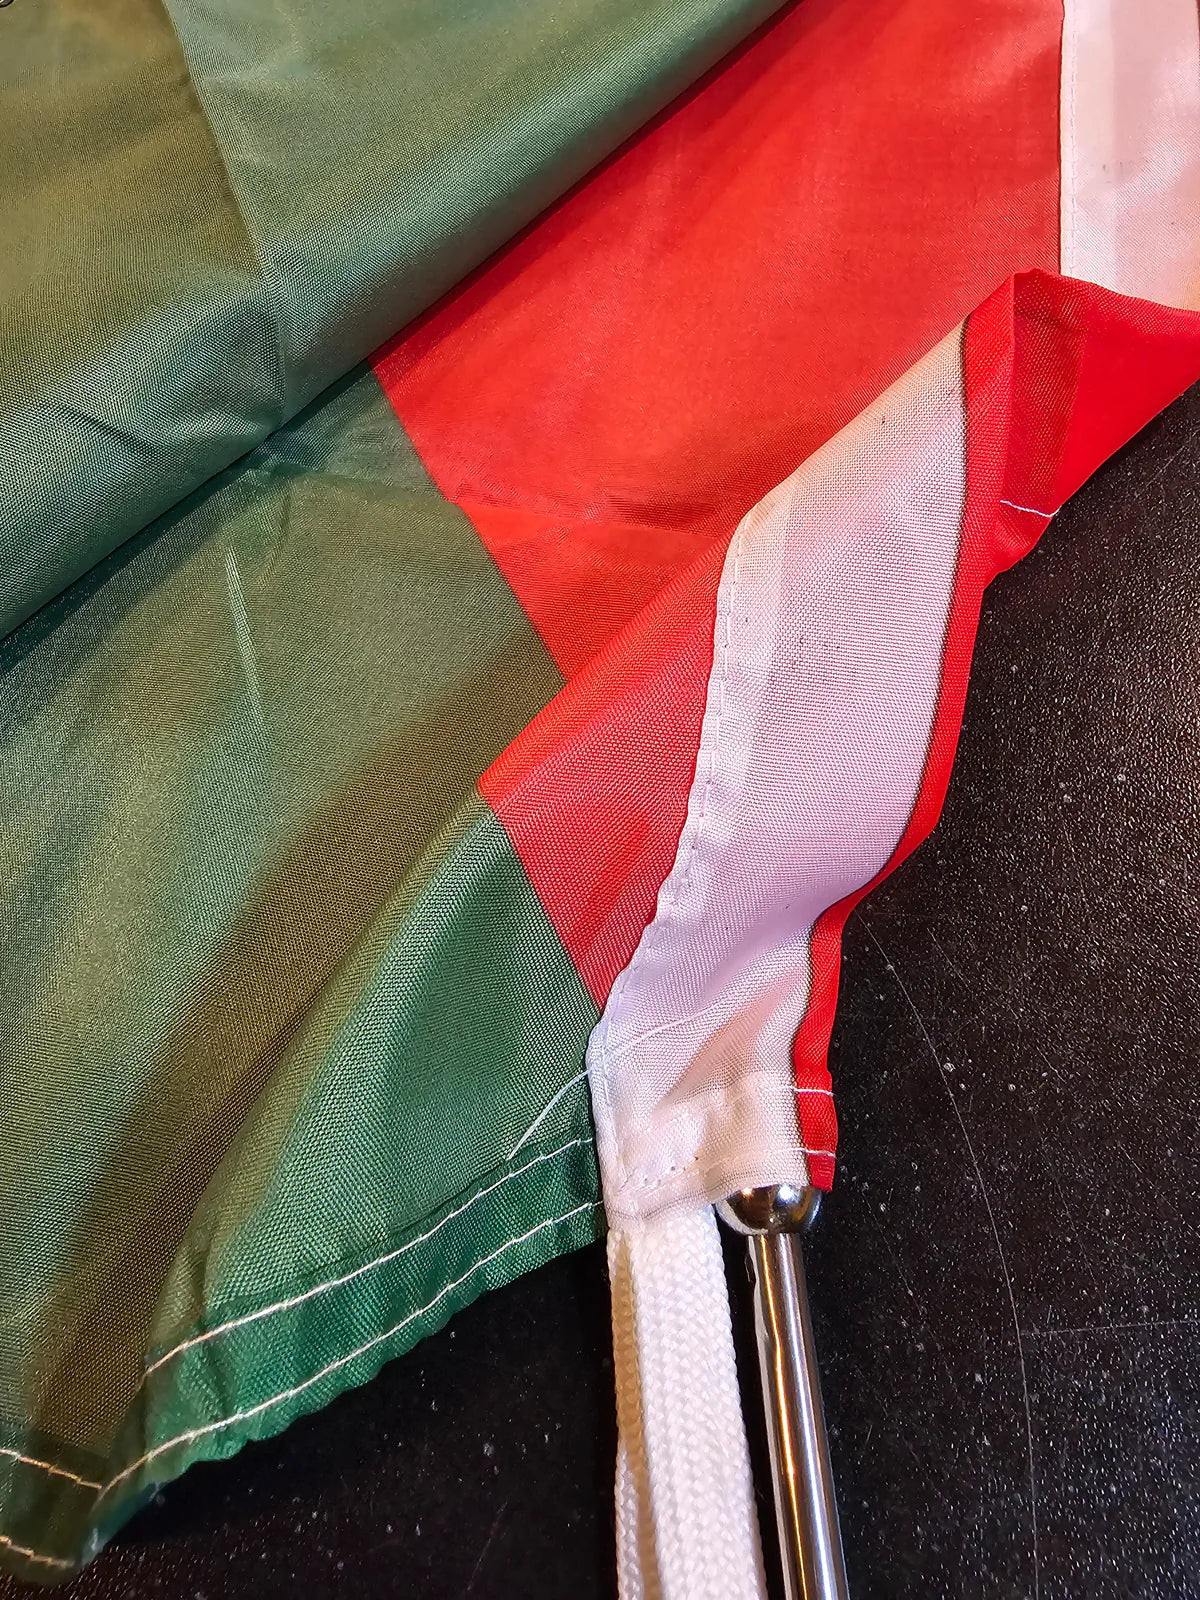 Palestinian Flag As a Bundle